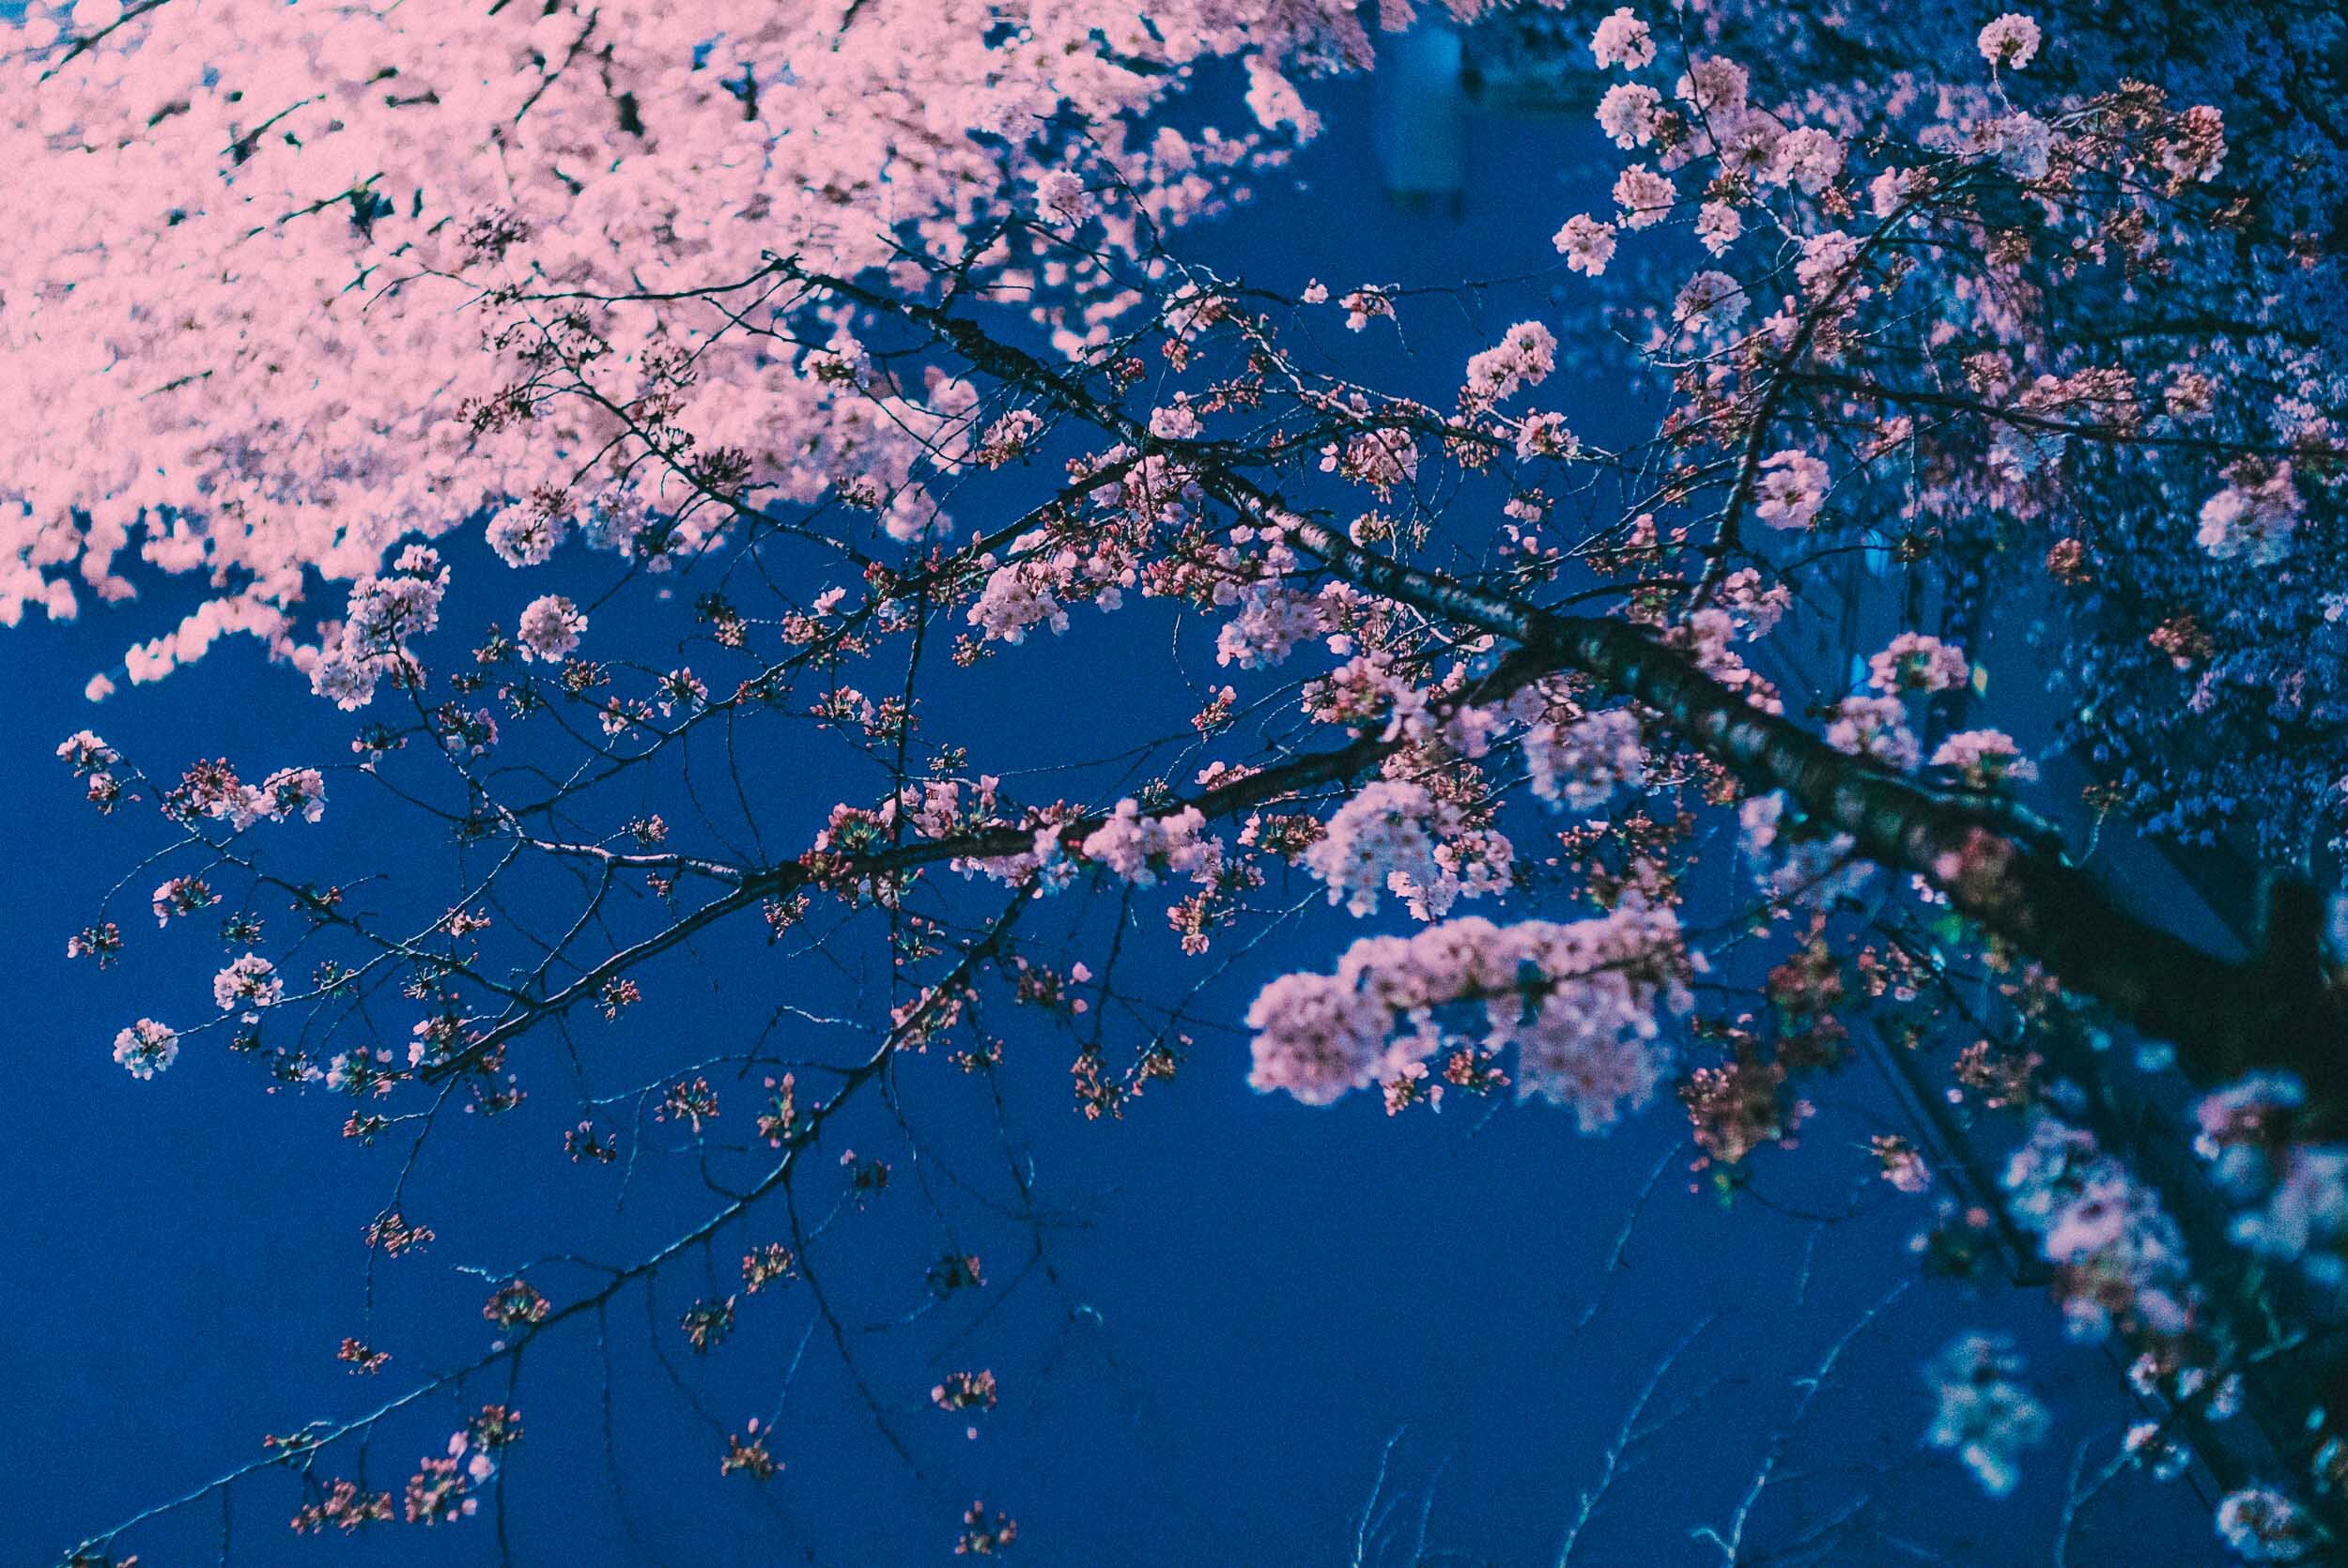 4-Cherry Blossom Festival-Tokyo, Japan-201704-Sony ILCE-7SM2.jpg